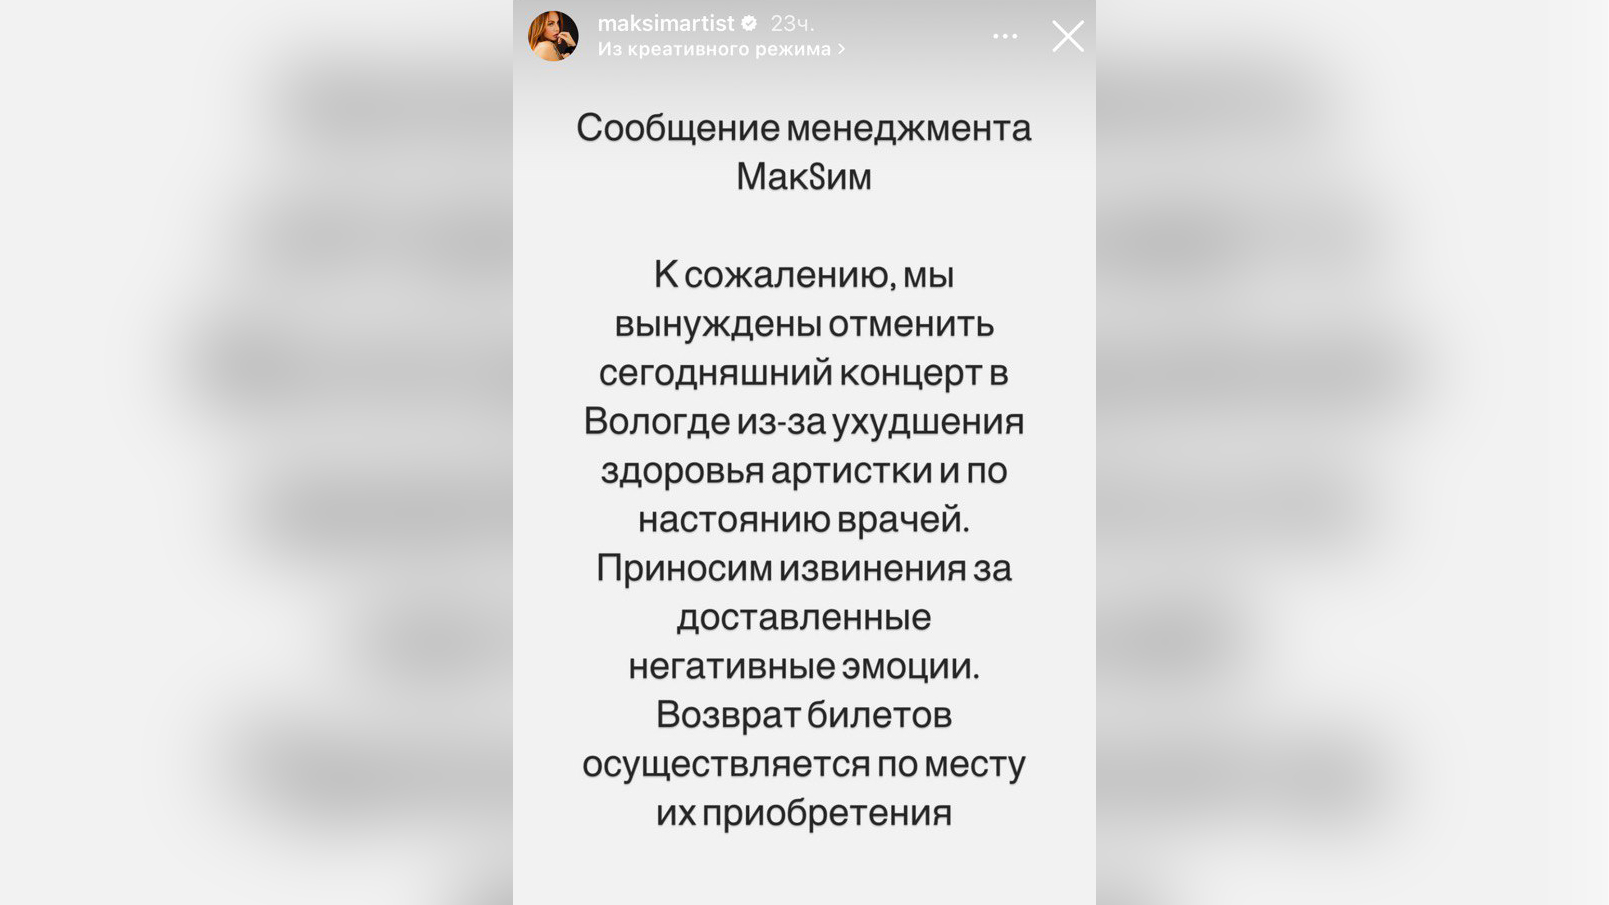 Певица МакSим отменила концерт в Вологде из-за ухудшения здоровья. Фото © Instagram (запрещён на территории Российской Федерации) / maksimartist